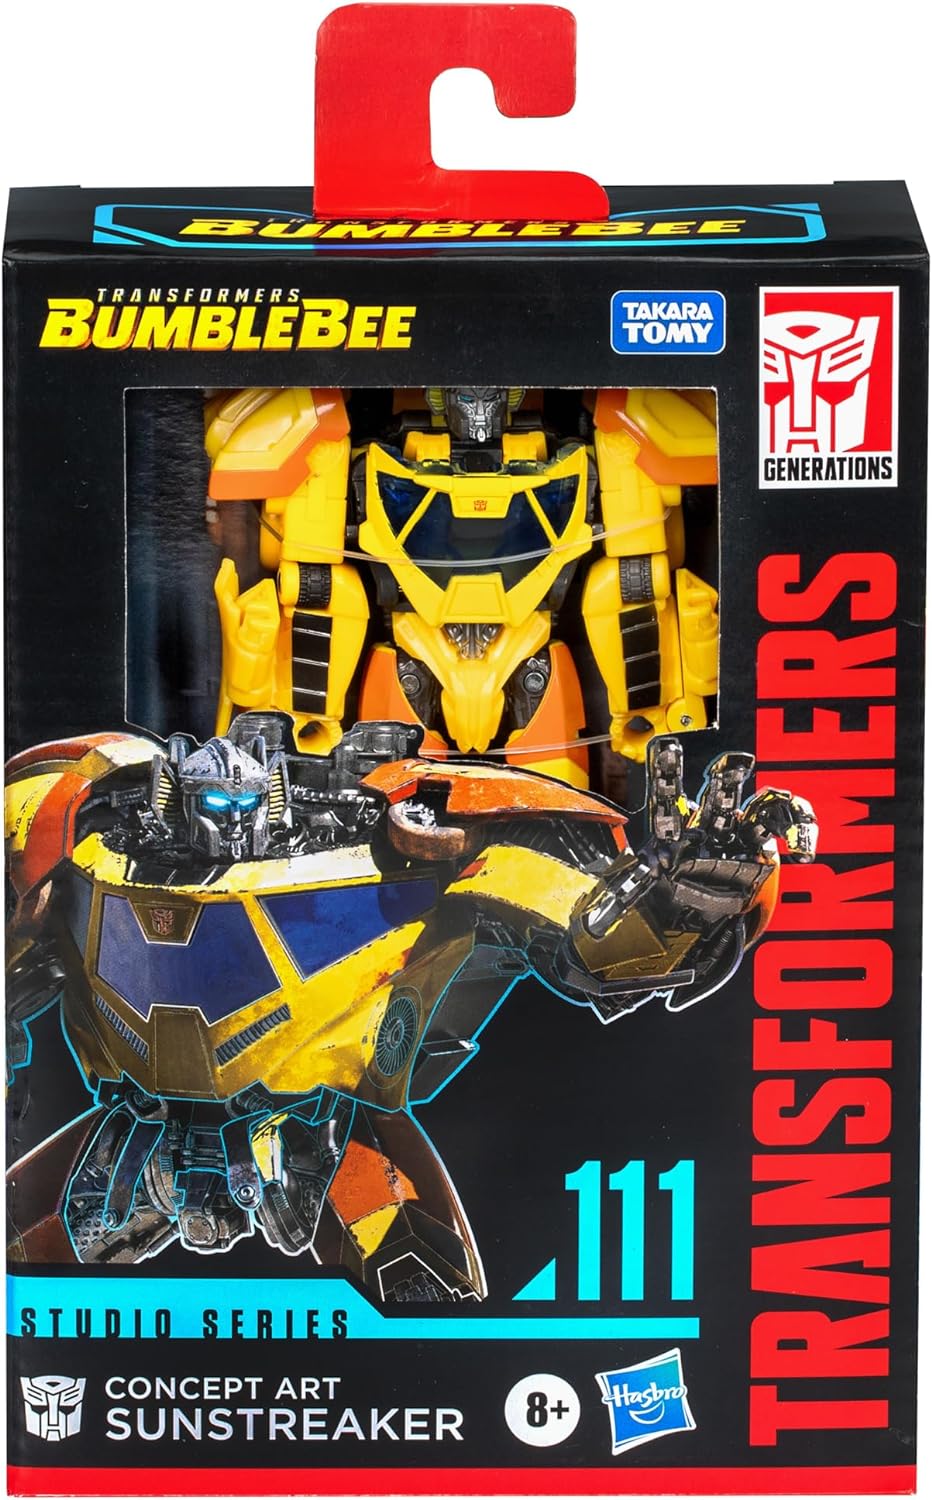 Transformers Deluxe Bumblebee Sunstreaker